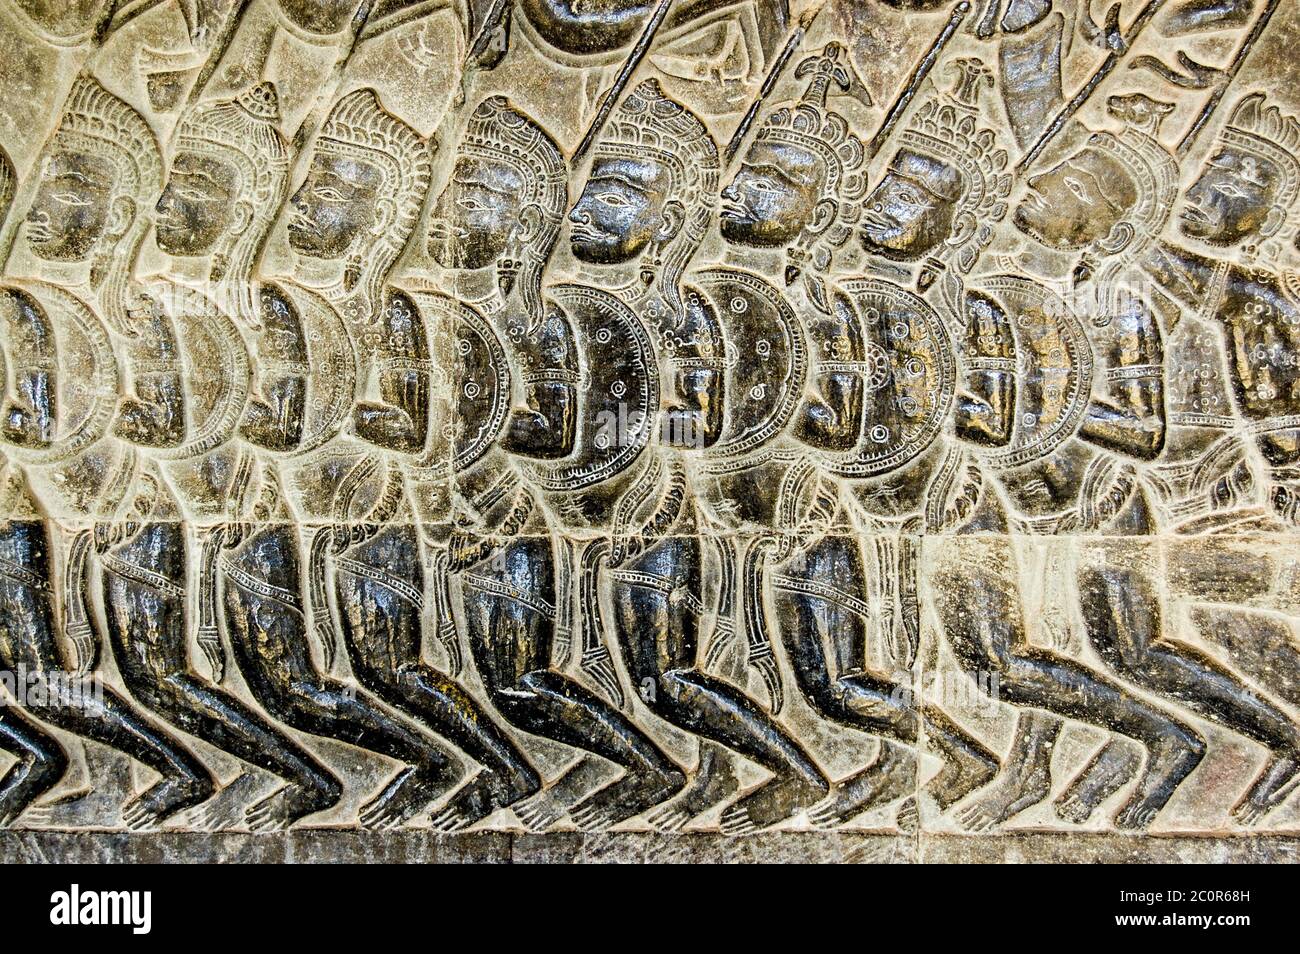 Bassorilievo dei soldati Pandava che marciavano verso la battaglia di Kurukshetra come descritto nel Mahabharata. Scultura del XI secolo, parete di Angkor Wat tem Foto Stock